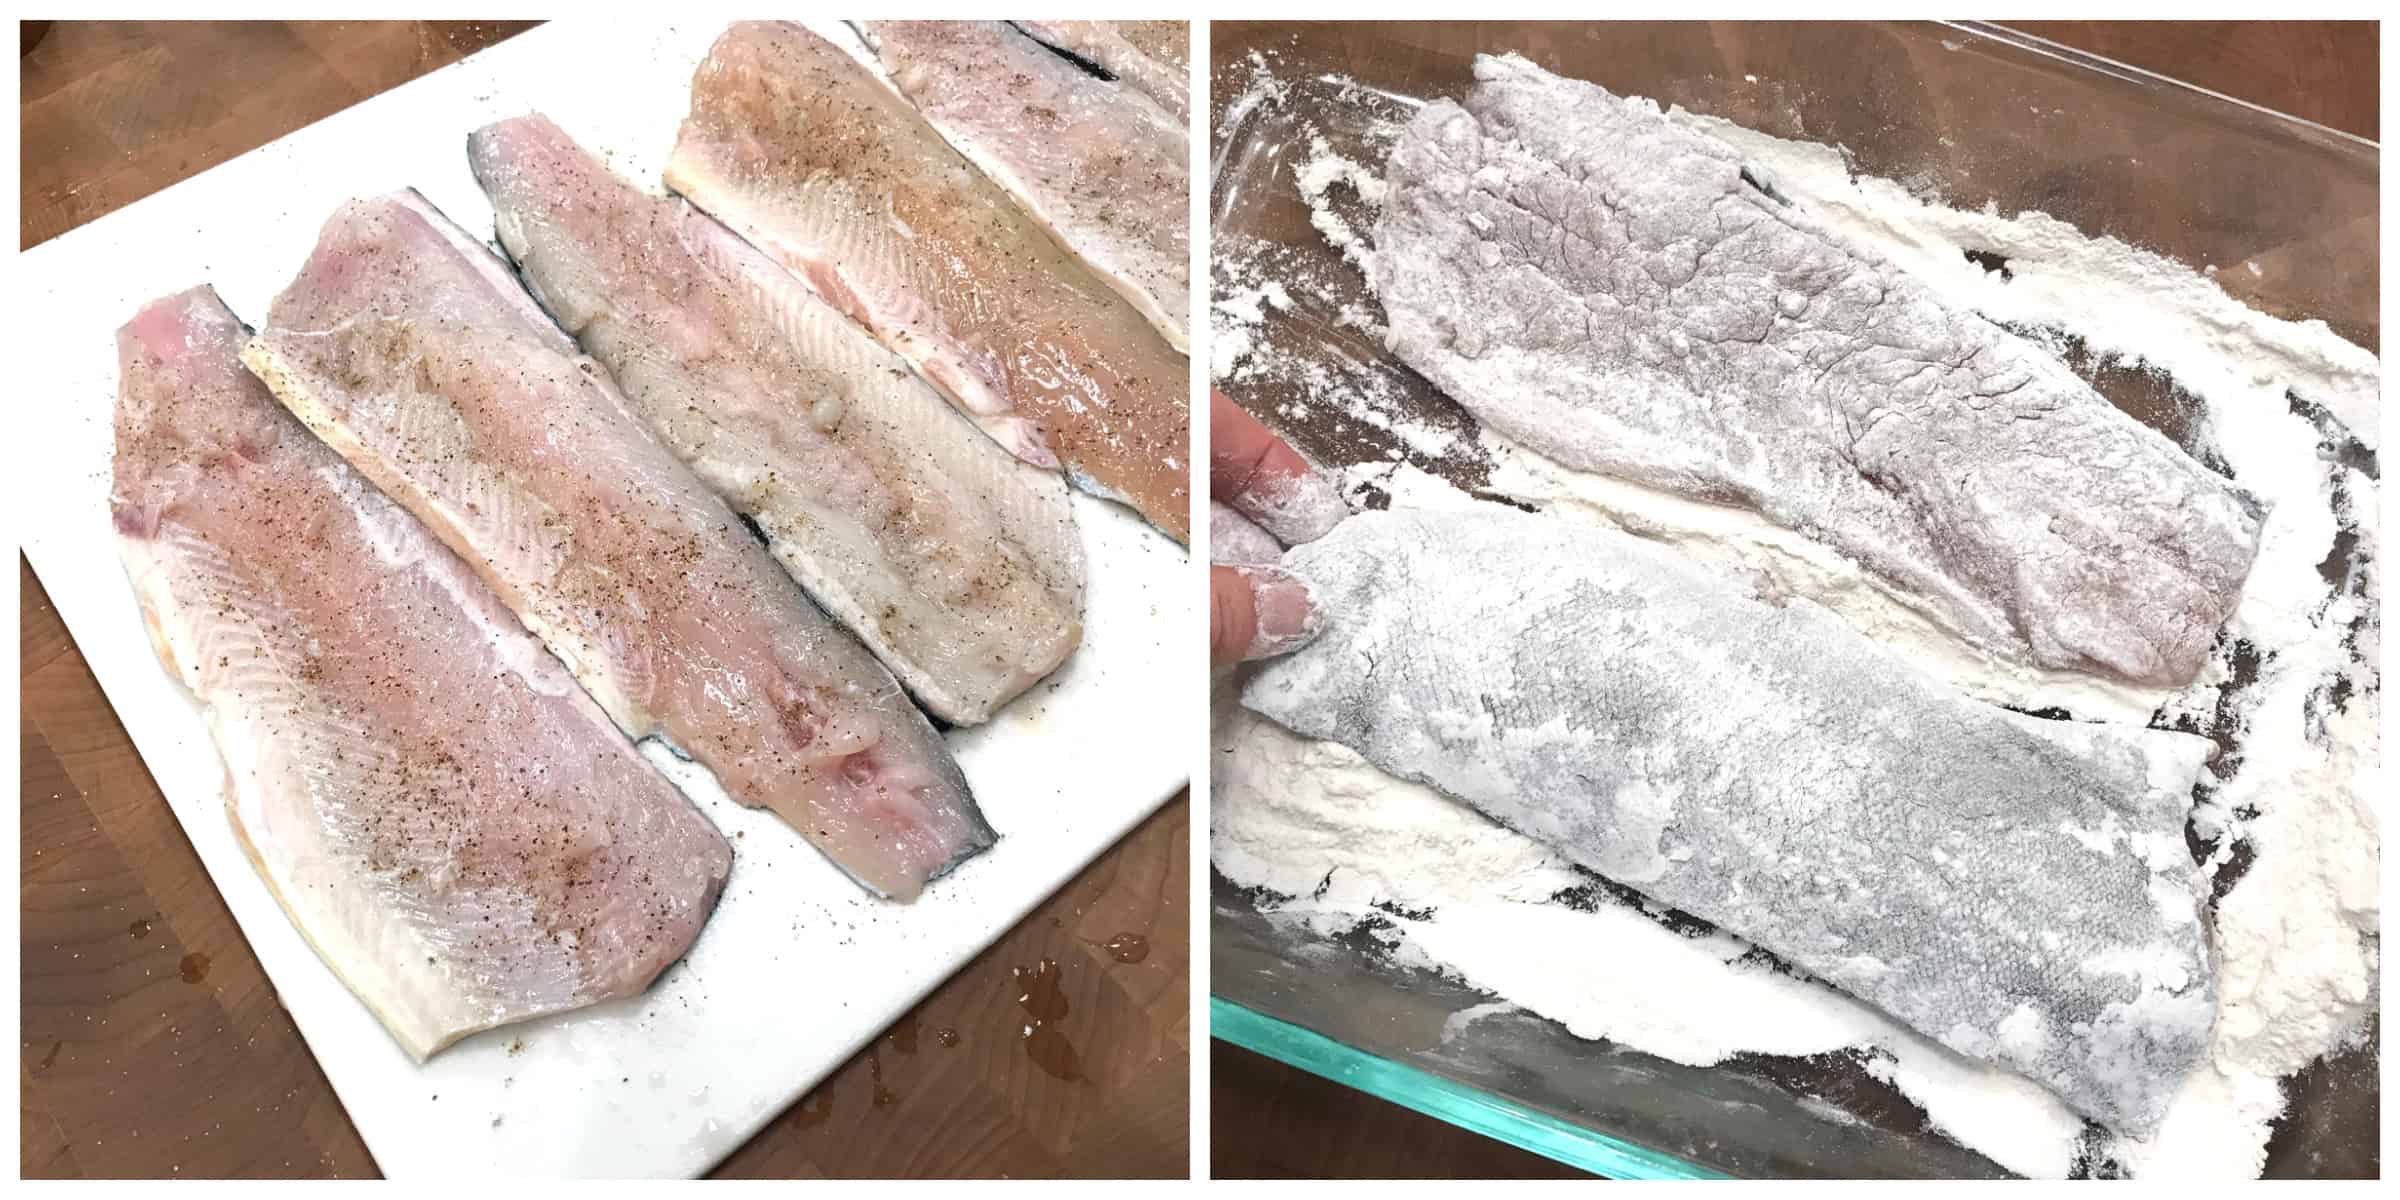 dredging fish in flour